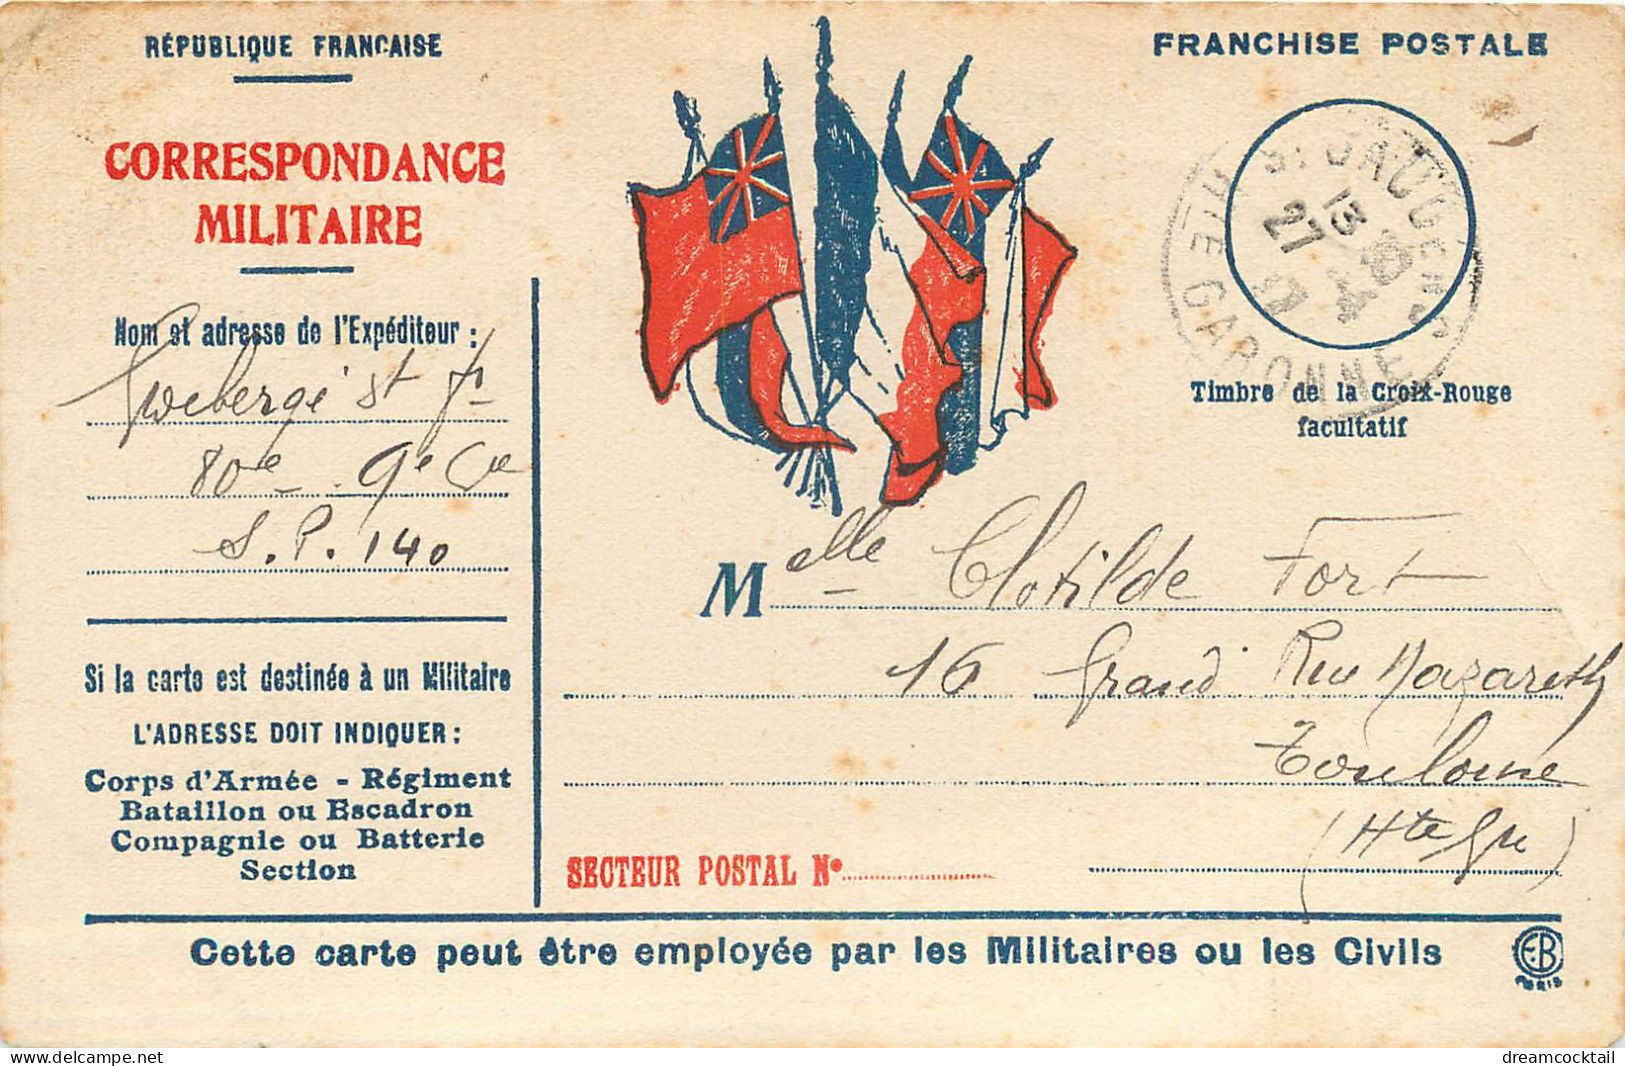 (S) Superbe LOT n°13 de 50 cartes postales anciennes sur toute la France